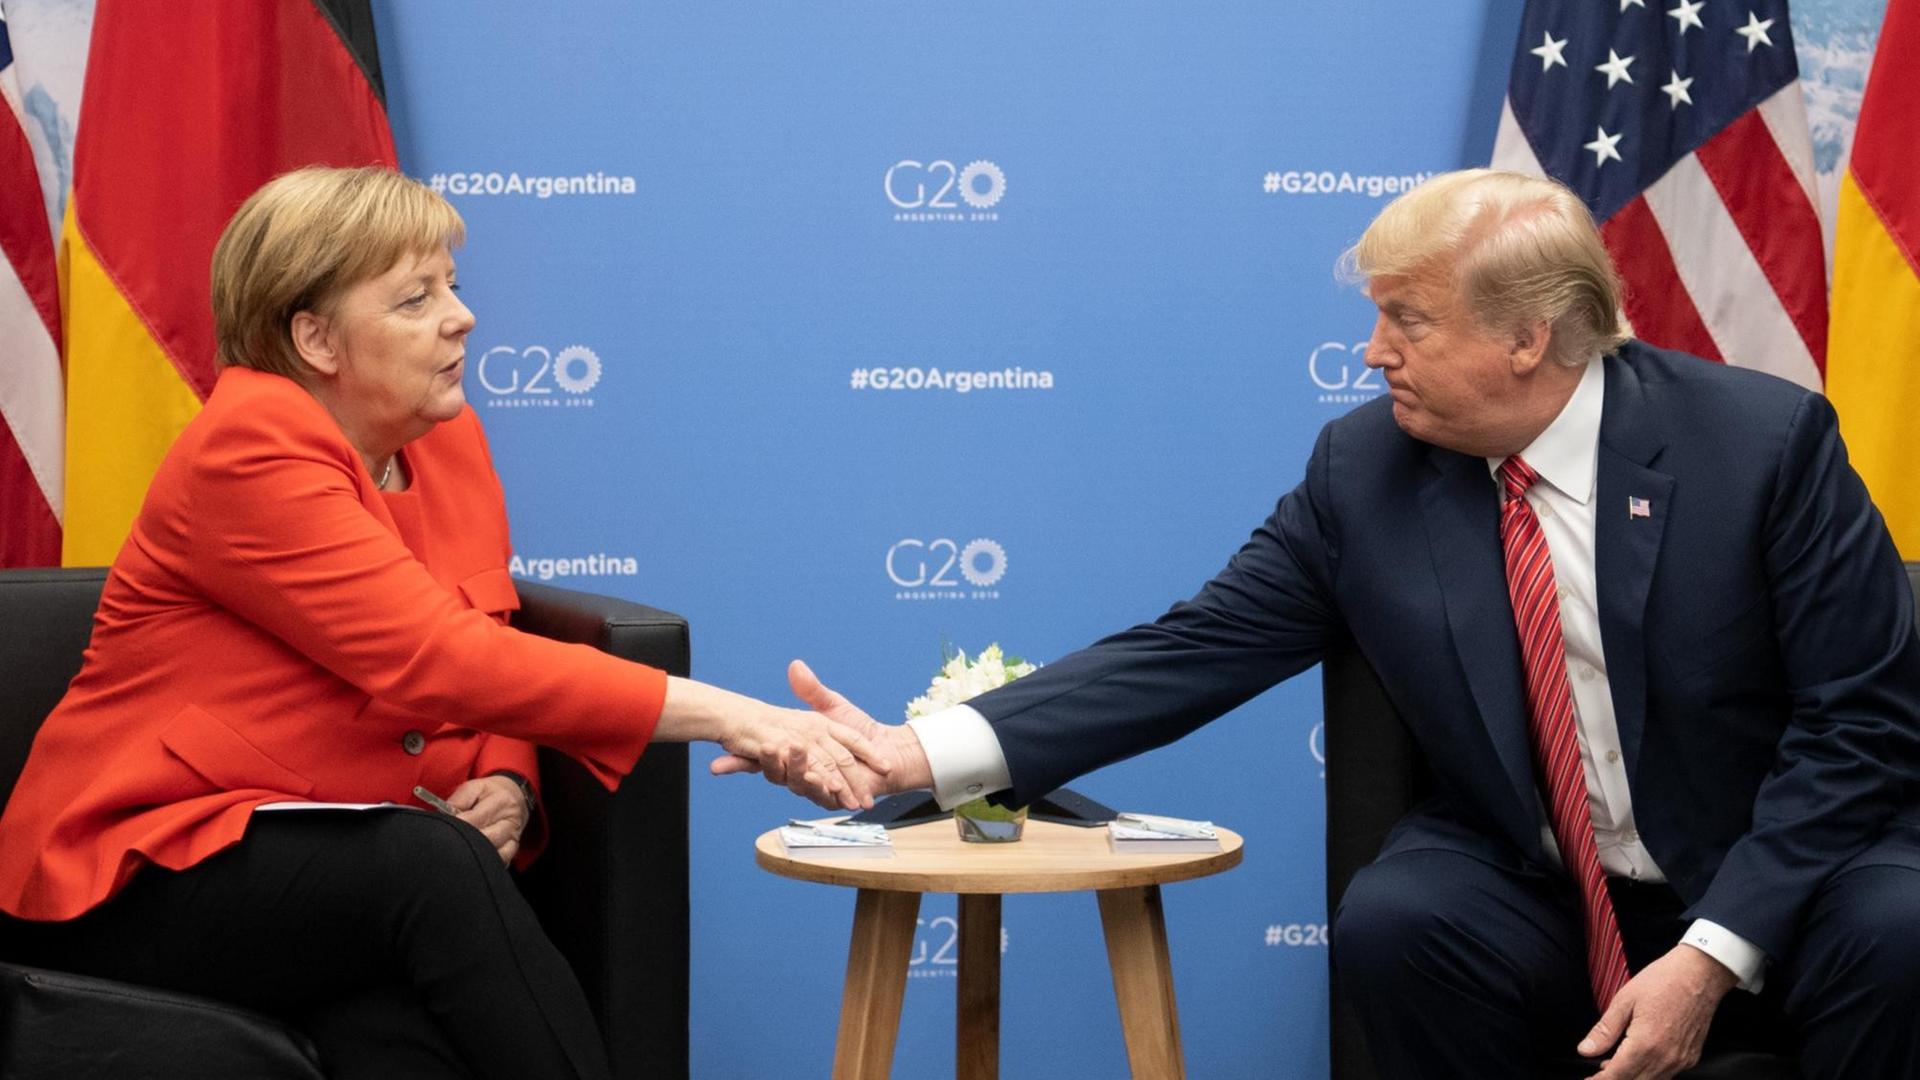 Das Bild zeigt Bundeskanzlerin Angela Merkel (CDU) und Donald Trump, Präsident der Vereinigten Staaten, Sie sitzen nebeneinander an einem Tisch und geben sich die Hand. Im Hinergrund sind die Flaggen Deutschlands und der USA sowie eine blaue Wand mit dem offiziellen Logo des Gipfeltreffens zu sehen.